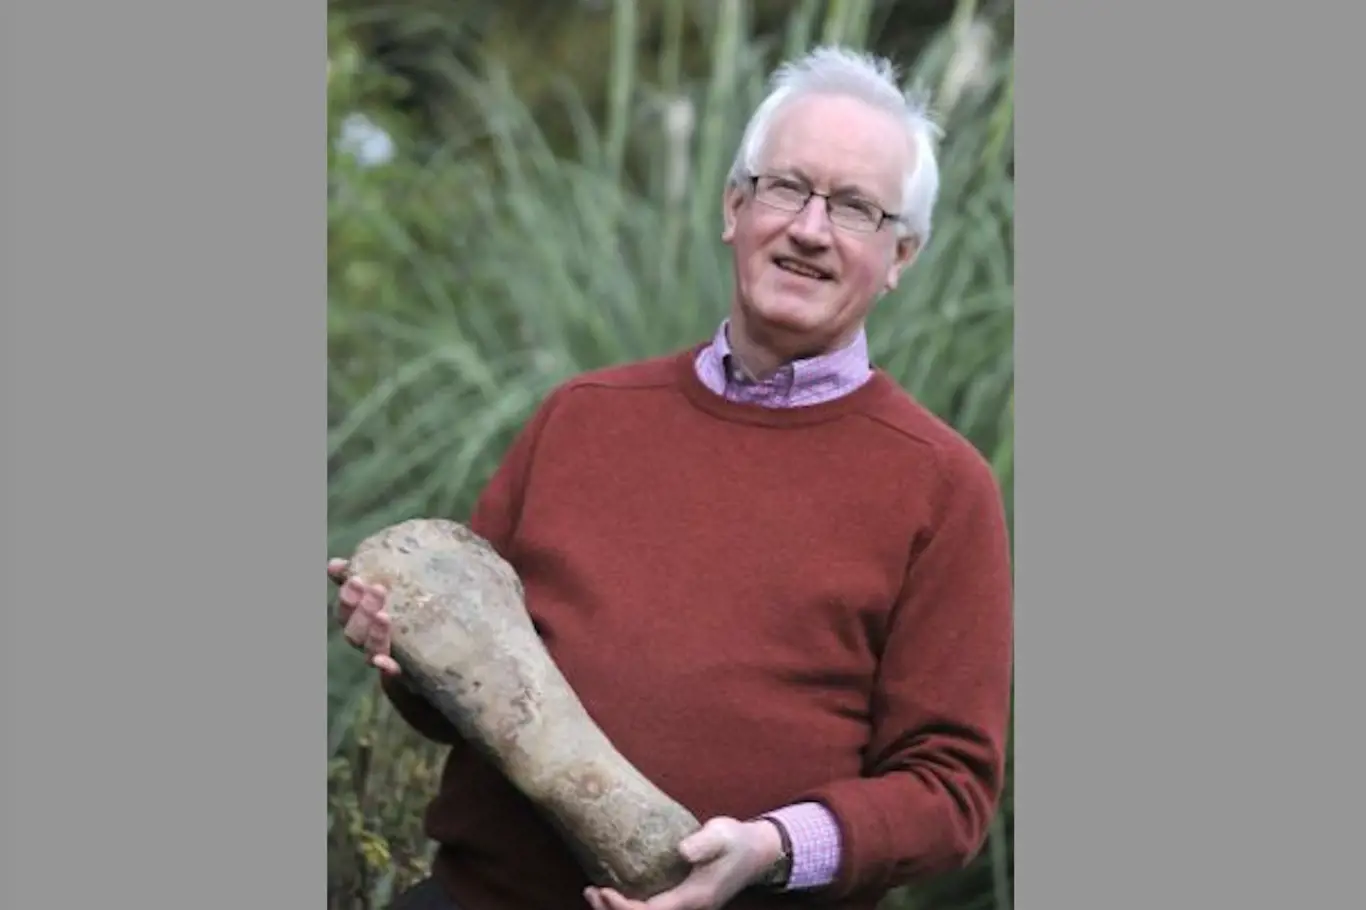 John Lambert, 68 let, našel v roce 1997 fosilii starou 250 milionů let. Ale uložil ji do své kůlny